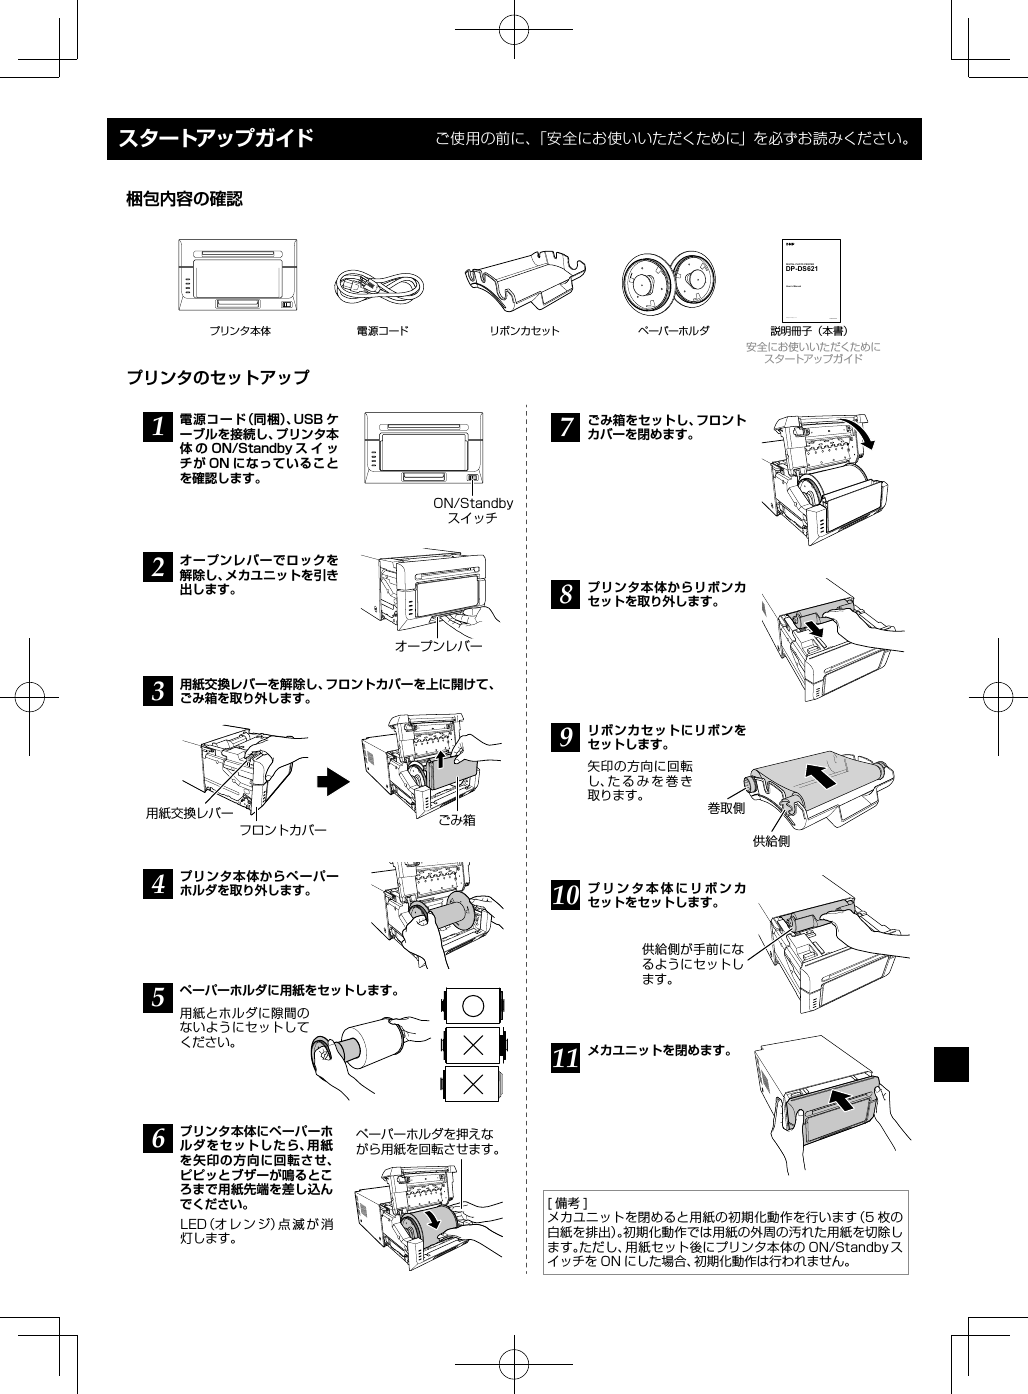 スタートアップガイド ご使用の前に、「安全にお使いいただくために」を必ずお読みください。プリンタのセットアップ梱包内容の確認DIGITAL PHOTO PRINTERUser’s ManualDP-DS621Dai Nippon Printing Co., Ltd. Version 0.20プリンタ本体 電源コード リボンカセット ペーパーホルダ 説明冊子（本書）安全にお使いいただくためにスタートアップガイド1オープンレバーでロックを解除し、メカユニットを引き出します。プリンタ本体からペーパーホルダを取り外します。電源コード（同梱）、USB ケーブルを接続し、プリンタ本体 の ON/Standby ス イ ッチが ON になっていることを確認します。2用紙交換レバーを解除し、フロントカバーを上に開けて、ごみ箱を取り外します。34ペーパーホルダに用紙をセットします。用紙とホルダに隙間のないようにセットしてください。5プリンタ本体にペーパーホルダをセットしたら、用紙を矢印の方向に回転させ、ピピッとブザーが鳴るところまで用紙先端を差し込んでください。LED（オレンジ）点滅が消灯します。67ごみ箱をセットし、フロントカバーを閉めます。8プリンタ本体からリボンカセットを取り外します。9リボンカセットにリボンをセットします。矢印の方向に回転し、たるみを巻き取ります。1011 メカユニットを閉めます。[備考]メカユニットを閉めると用紙の初期化動作を行います（5 枚の白紙を排出）。初期化動作では用紙の外周の汚れた用紙を切除します。ただし、用紙セット後にプリンタ本体の ON/Standby スイッチを ON にした場合、初期化動作は行われません。プリンタ本体にリボンカセットをセットします。巻取側供給側ペーパーホルダを押えながら用紙を回転させます。供給側が手前になるようにセットします。オープンレバー用紙交換レバーフロントカバー ごみ箱ON/Standbyスイッチ